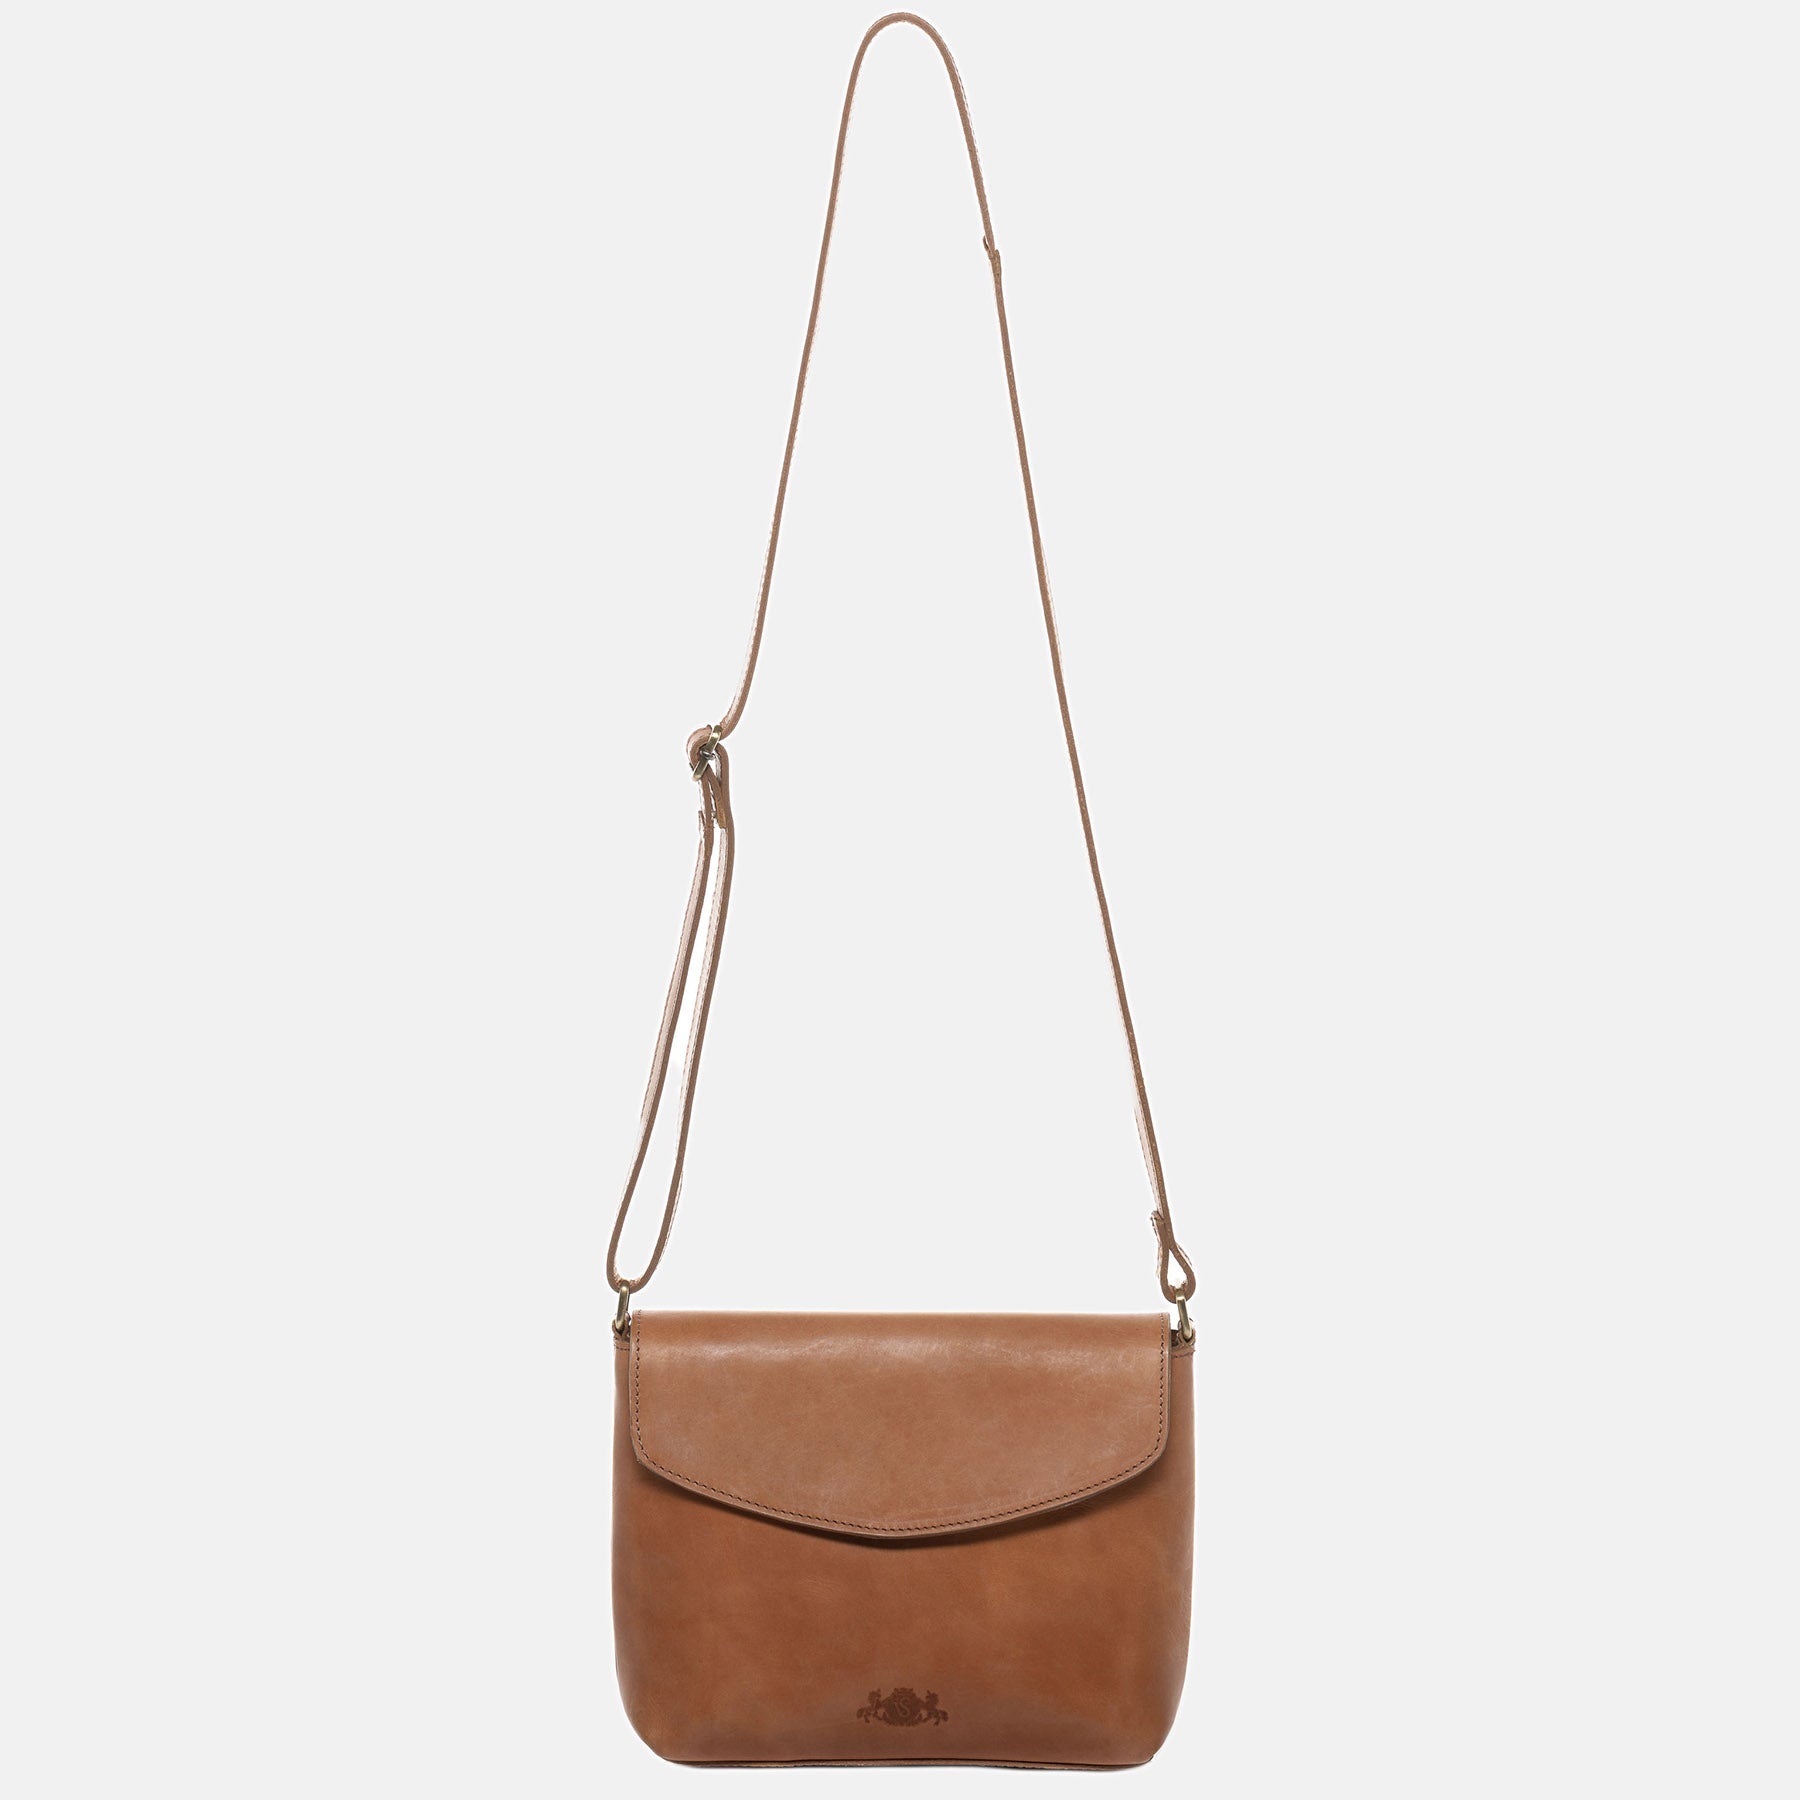 Shoulder bag ELYSA smooth leather brown